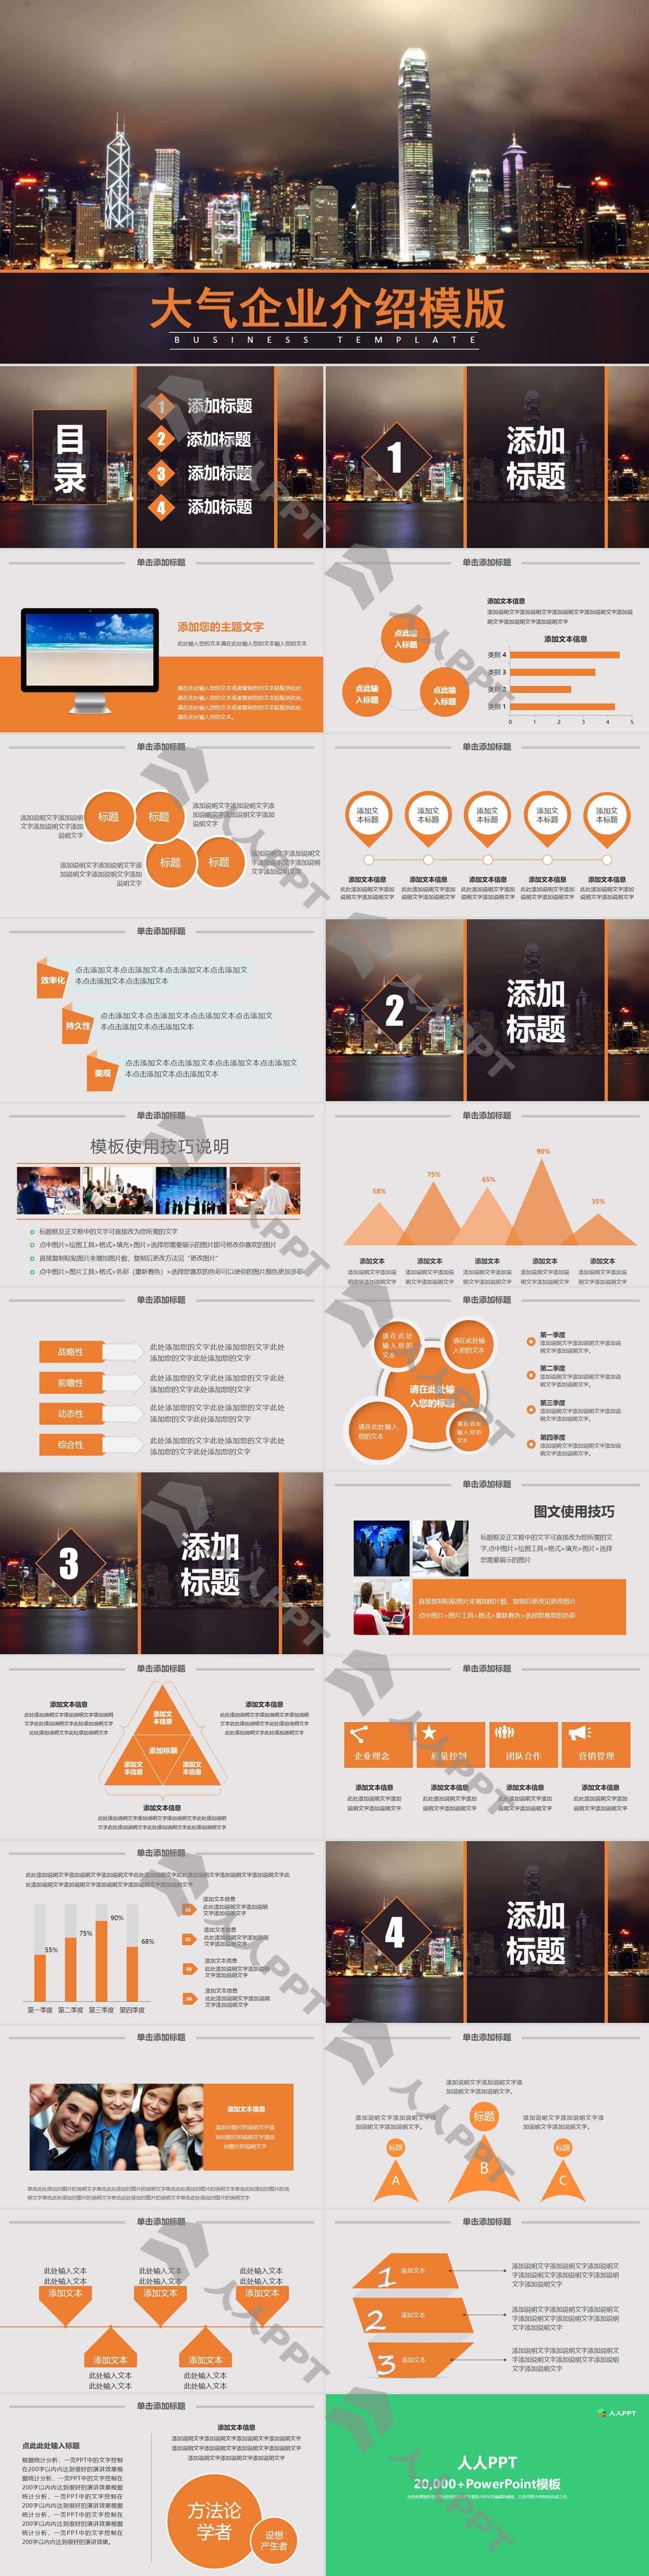 璀璨香港夜景封面简约大气企业介绍PPT模板长图